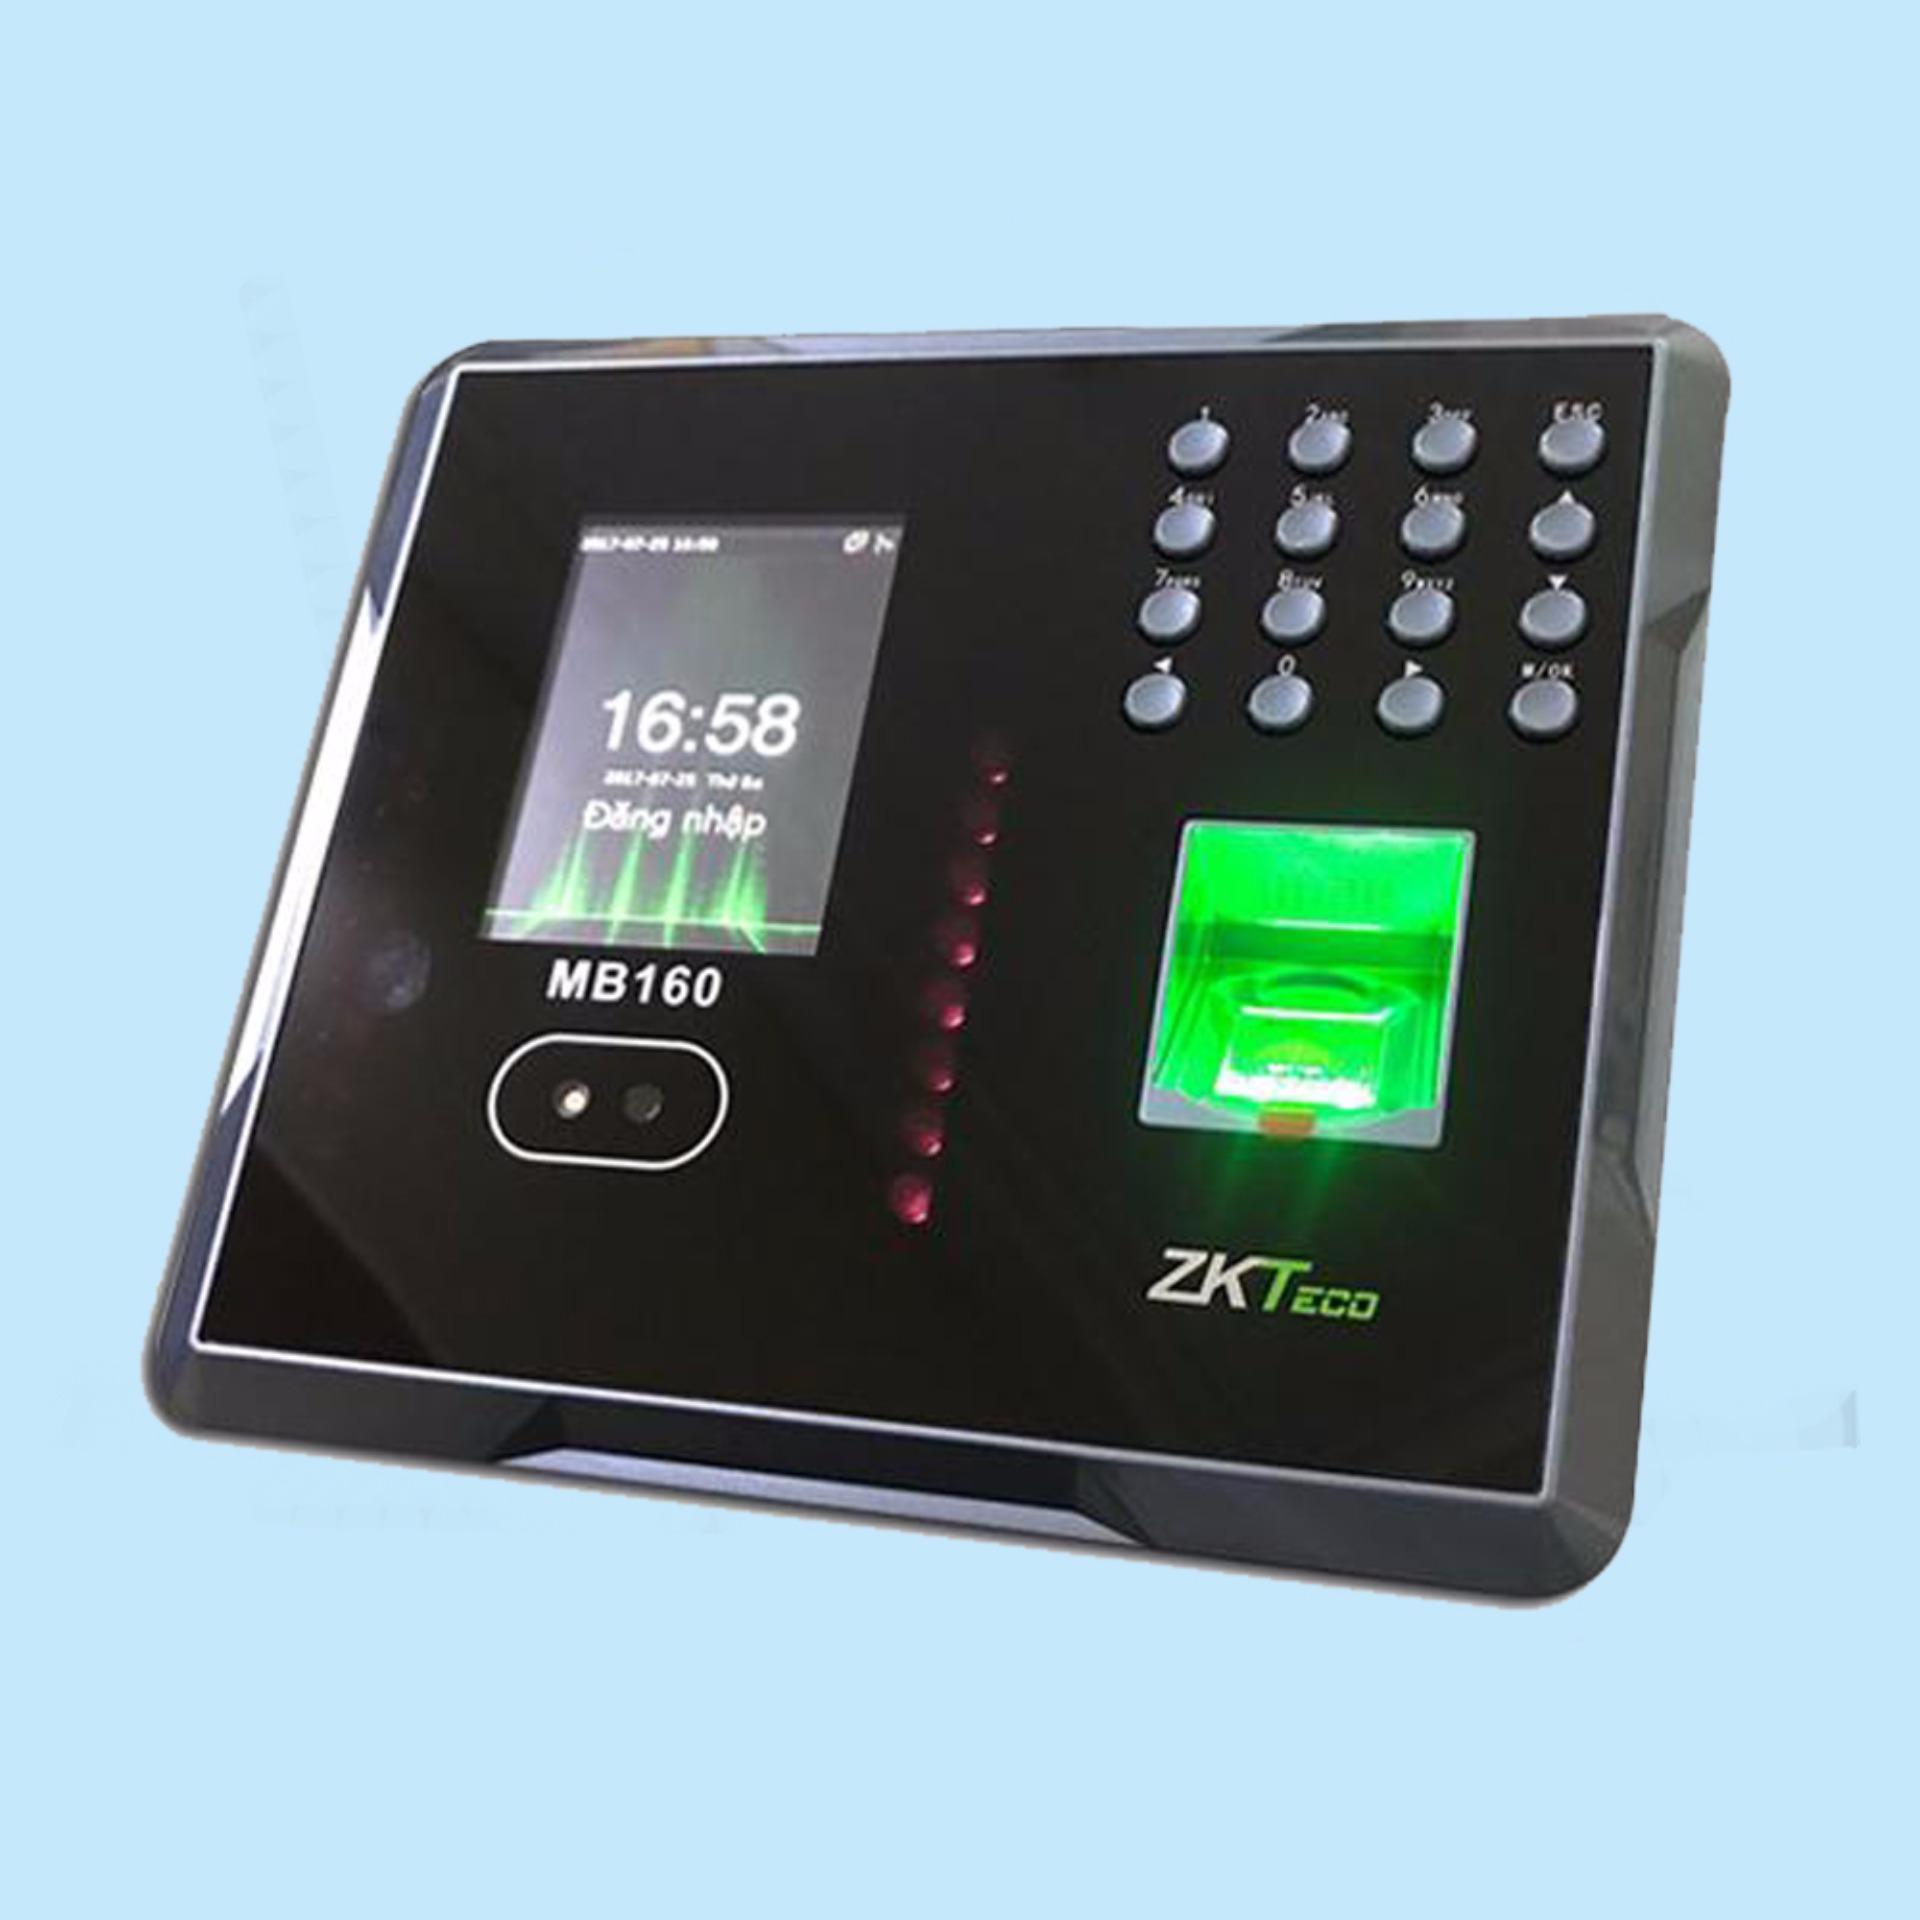 Zkteco MB160: Máy chấm công & kiểm soát ra vào bằng khuôn mặt, vân tay và thẻ